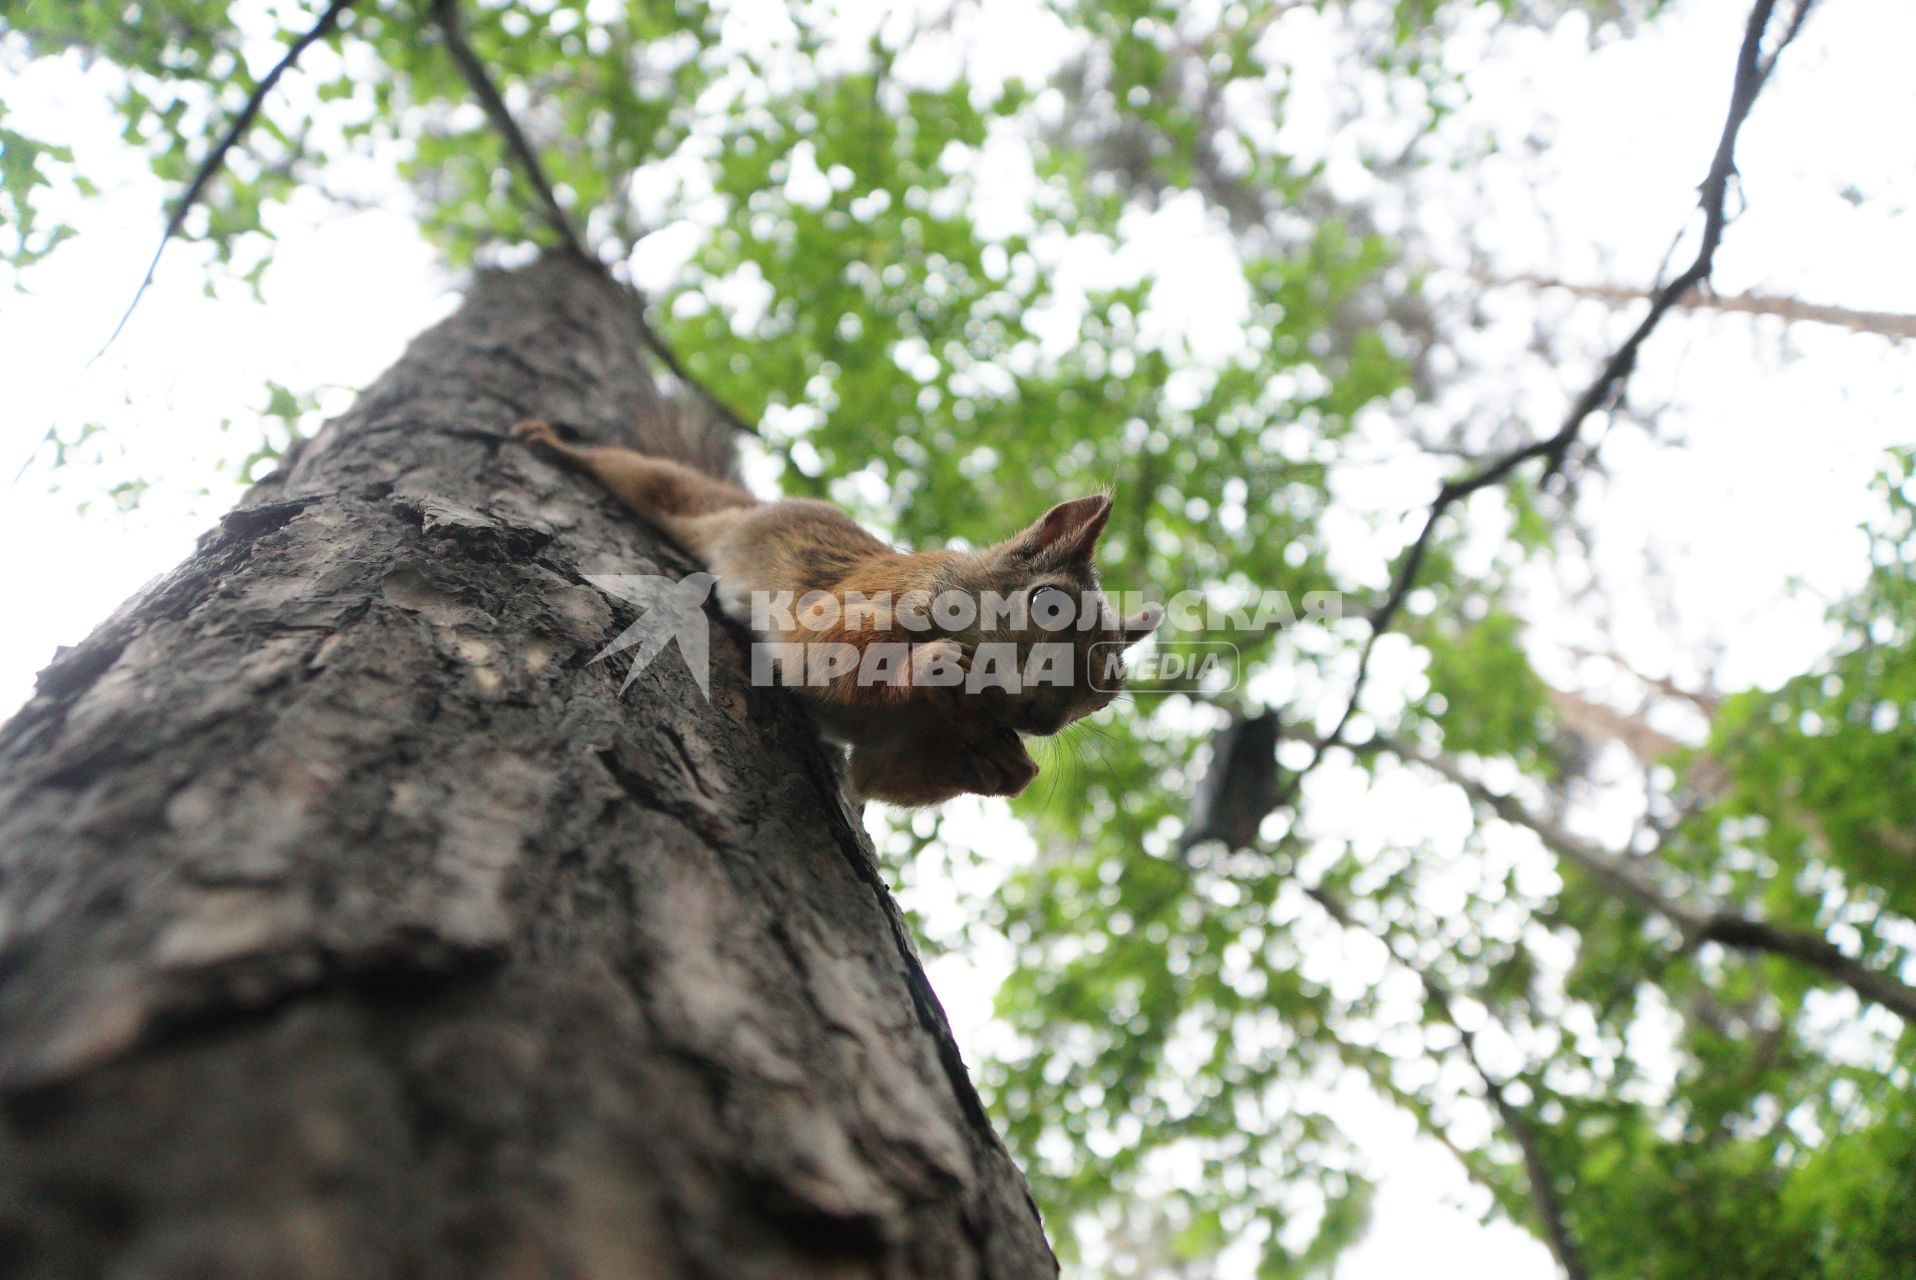 Екатеринбург. Белка грызет грецкий орех сидя на дереве в лесопарке